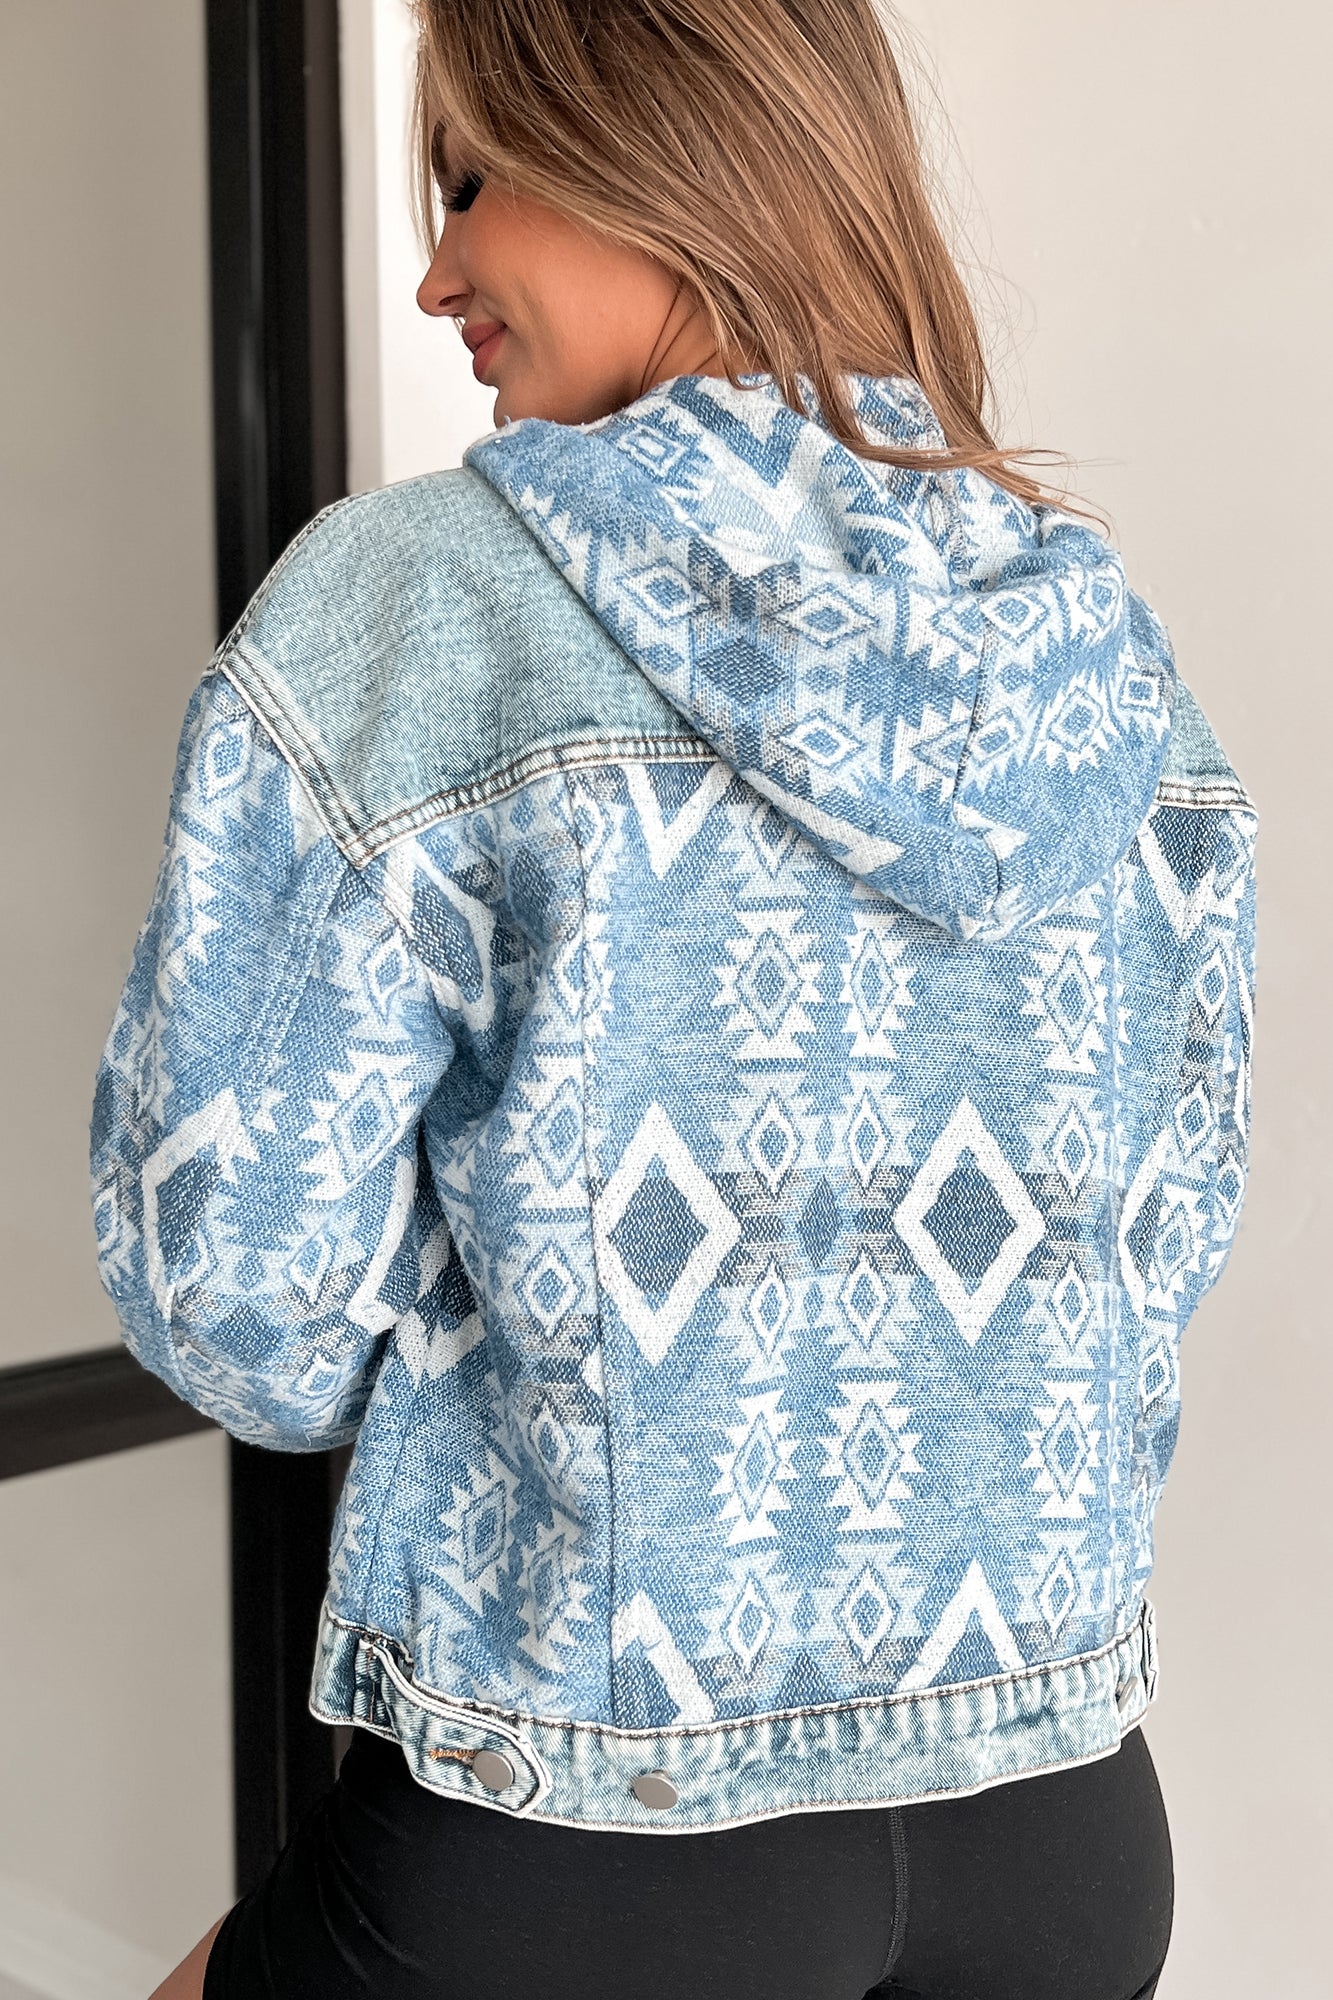 Not Just Anybody Hooded Denim Aztec Jacket (Blue) - NanaMacs